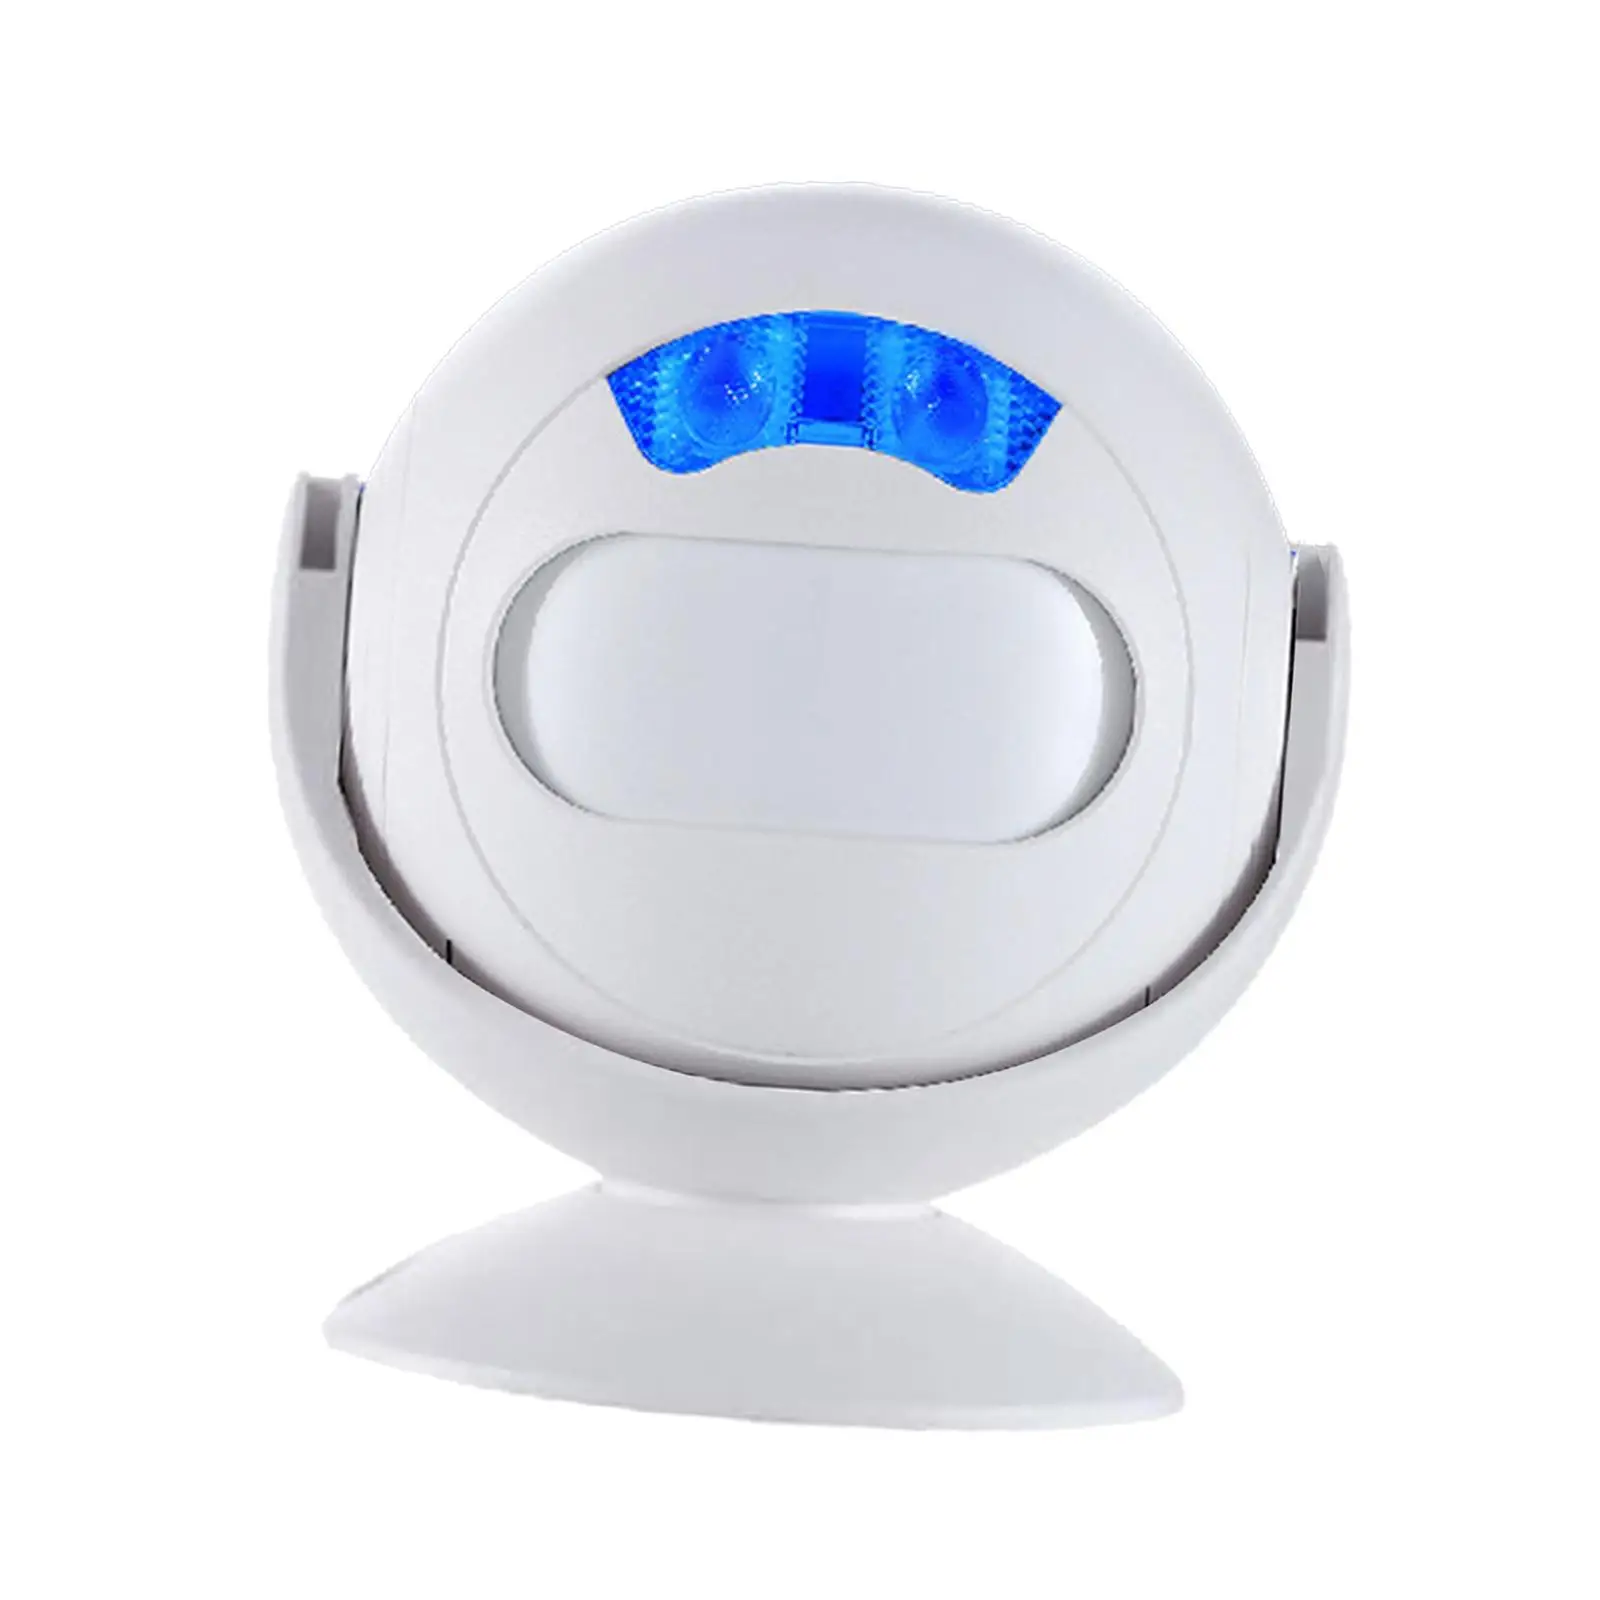  Door Chime Alarm   35 Songs Motion Sensor Guest   for Home, Door ,Business ,Office, Shop